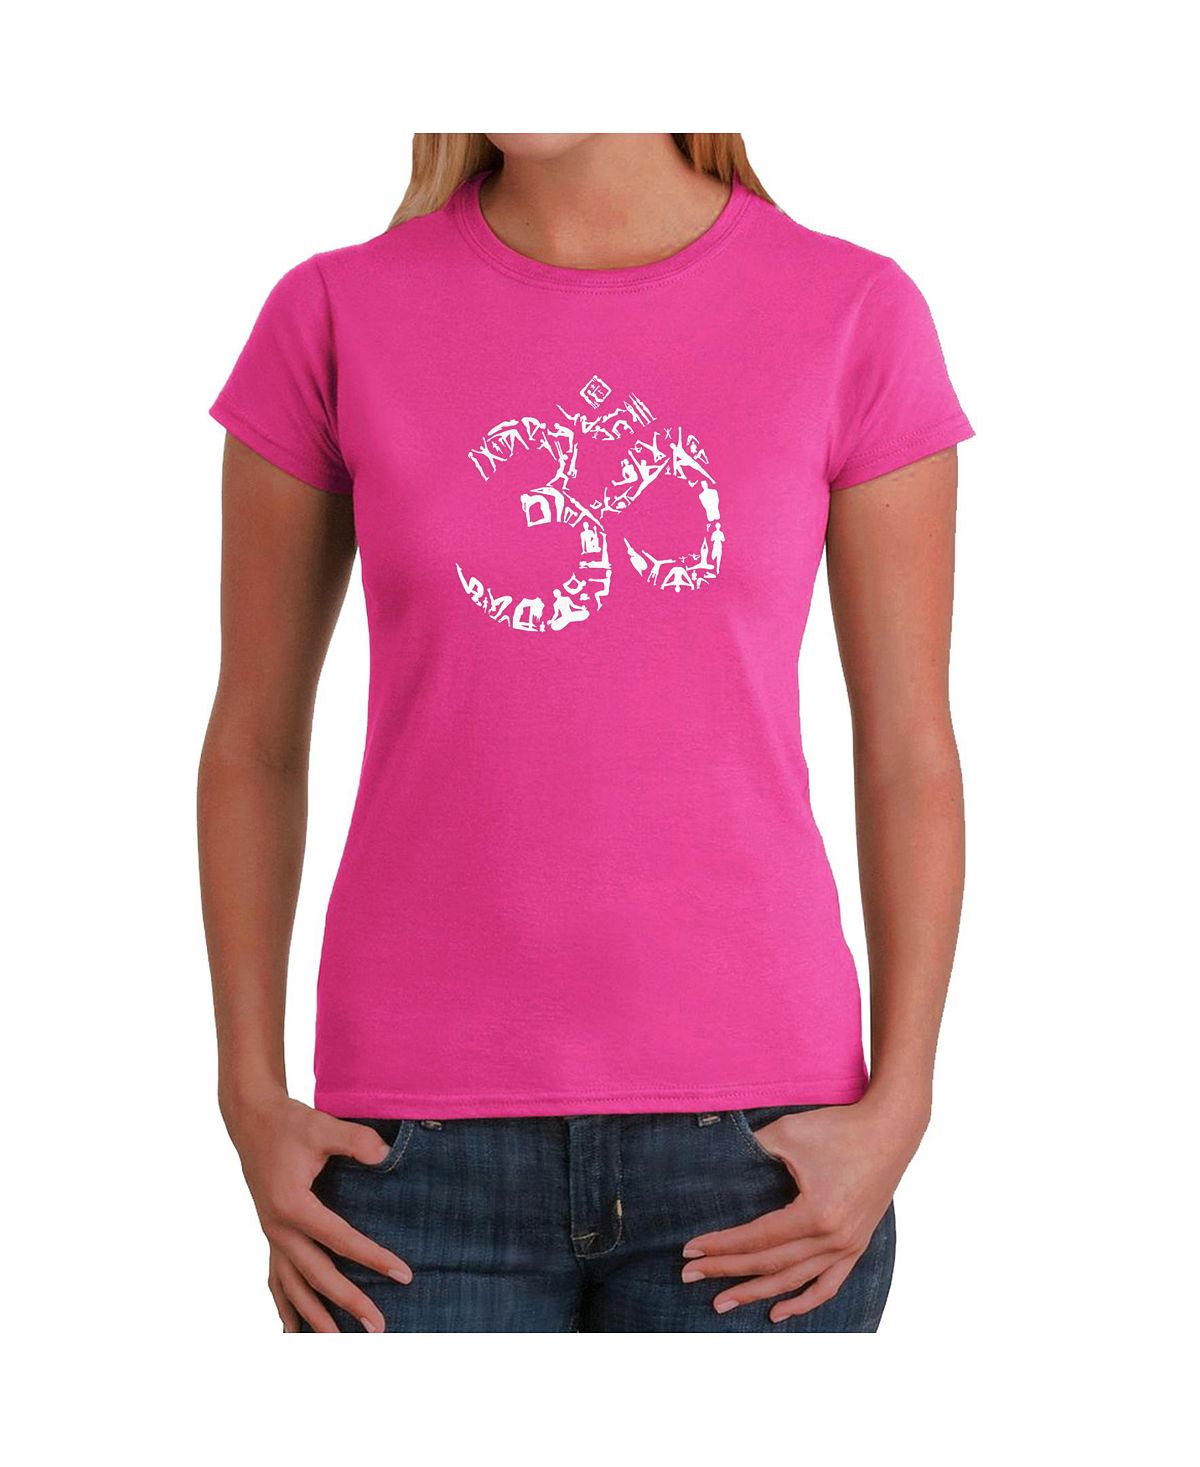 Женская футболка word art - символ ом из поз йоги LA Pop Art, розовый